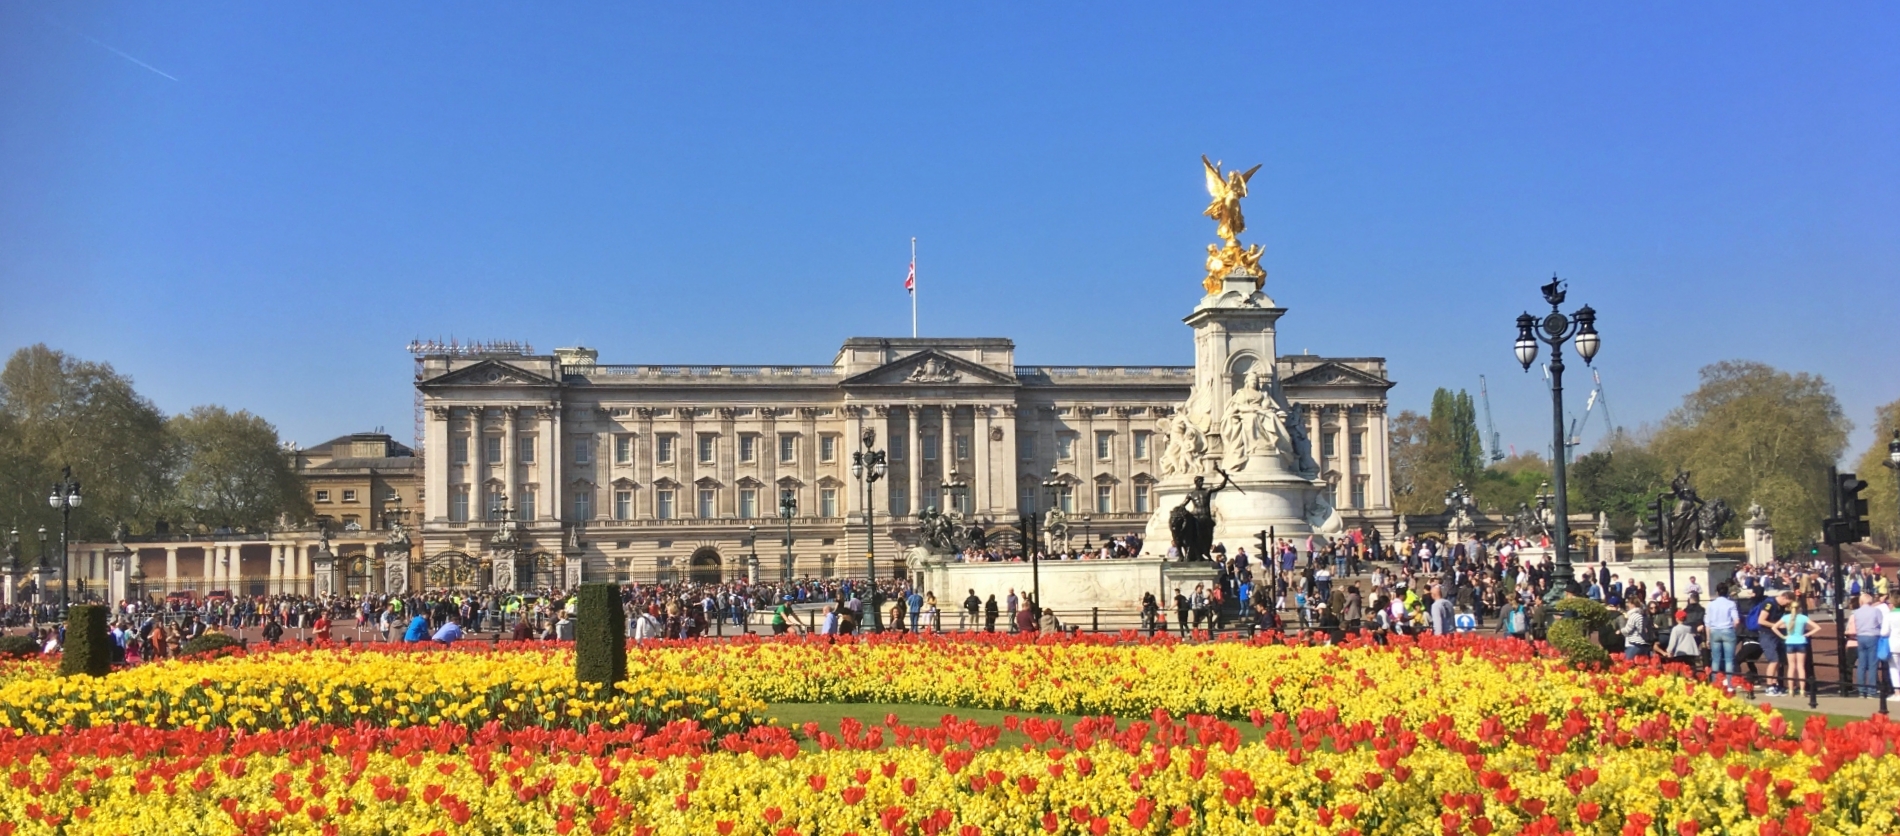 O que ver em Londres - palácio da rainha